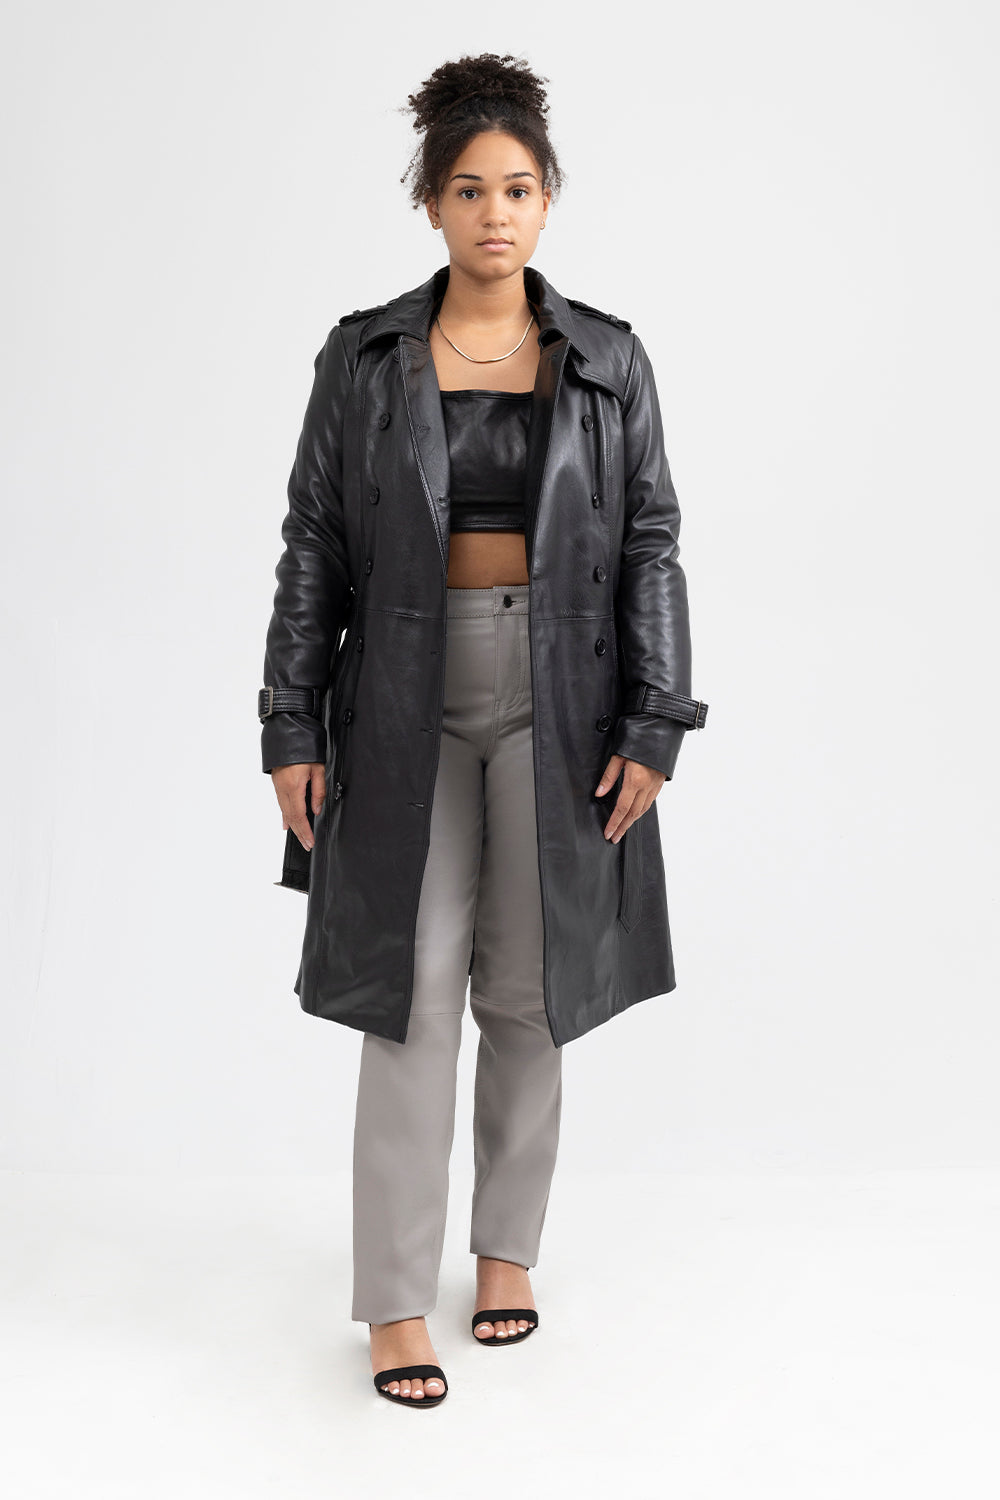 Olivia Womens Fashion Leather Jacket